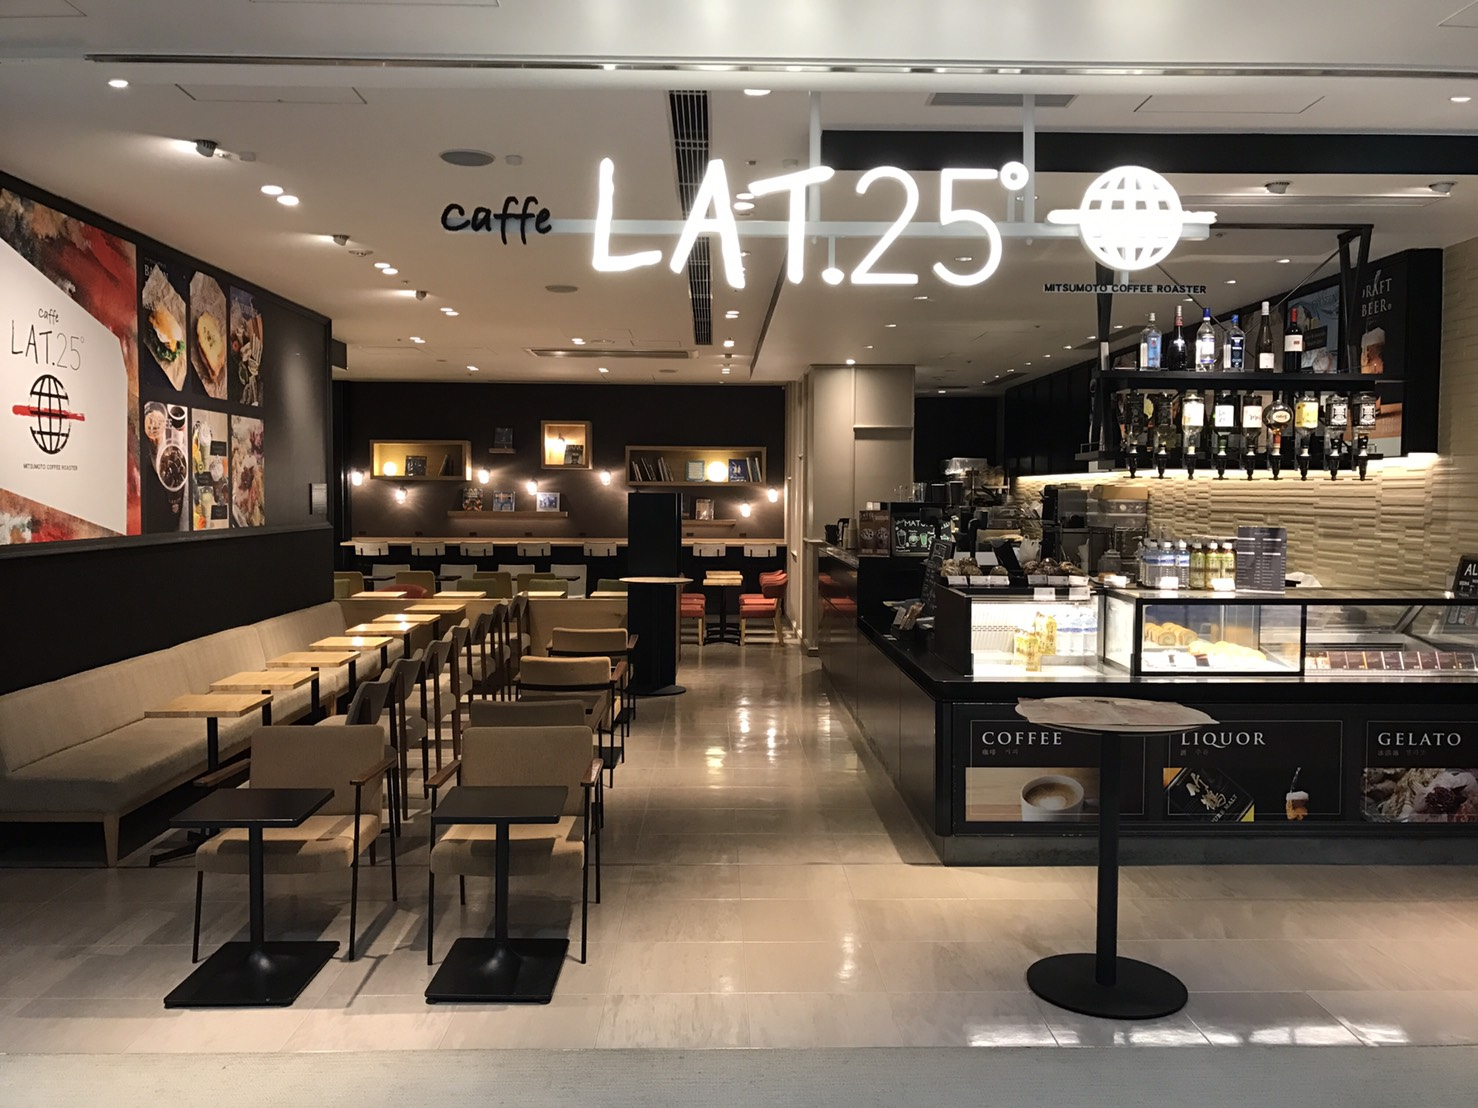 caffe LAT.25° 成田機場第3航廈3F店的店鋪圖片